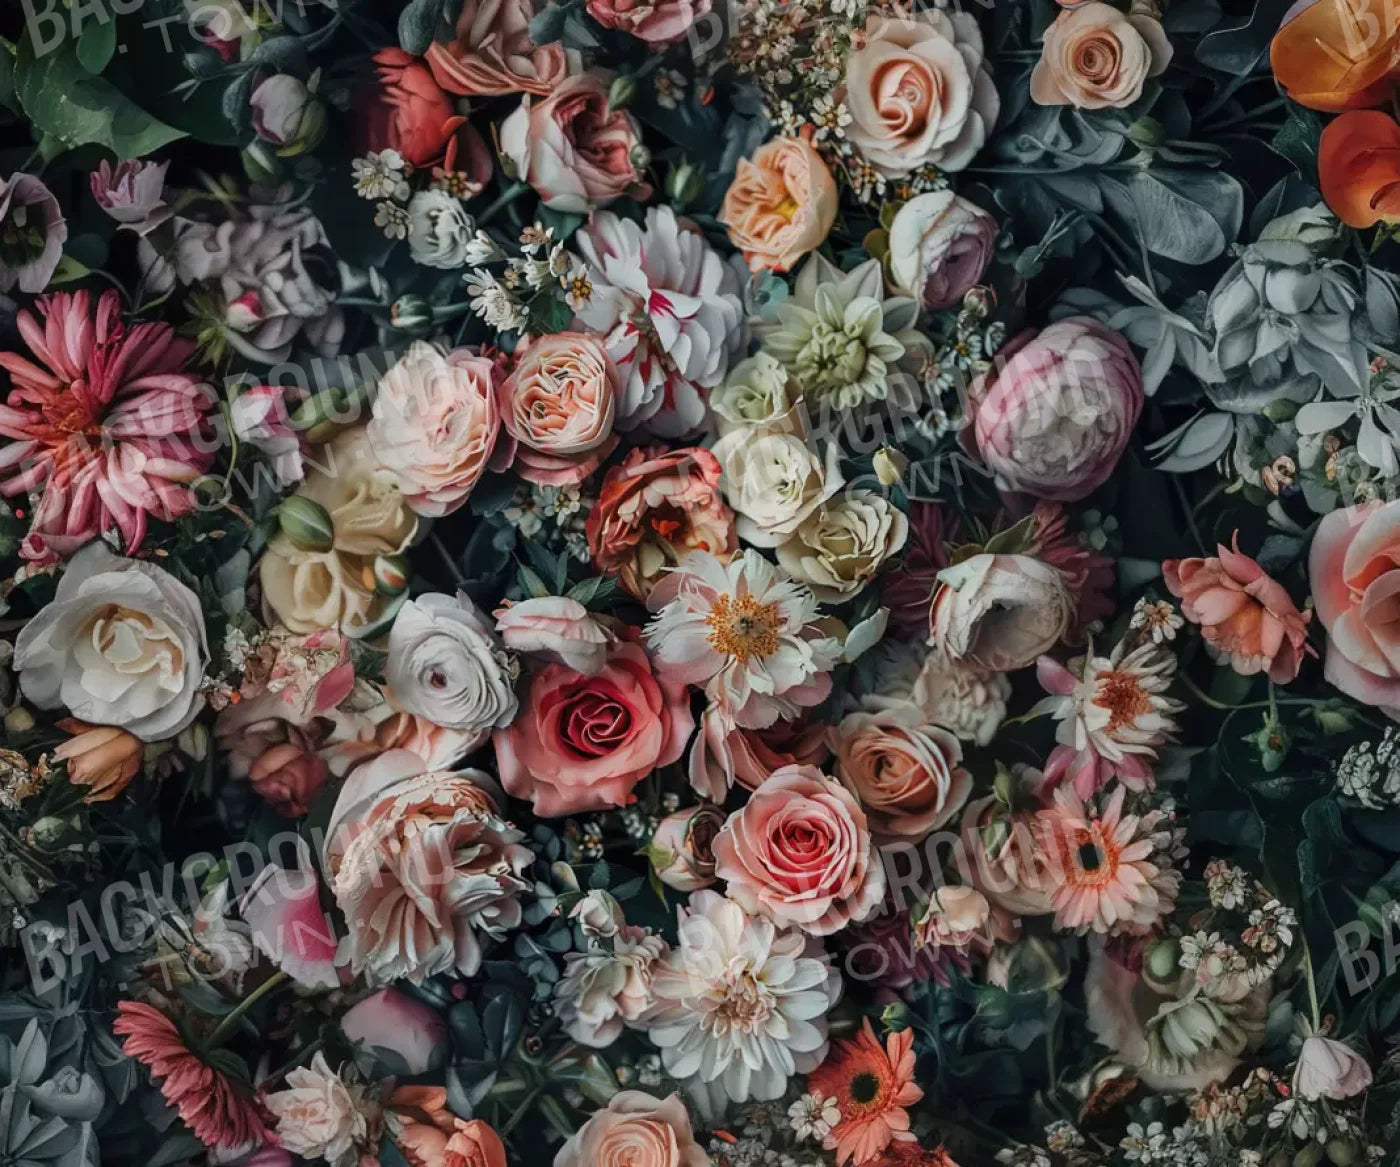 Floral Fantasy Bright 5’X4’2 Fleece (60 X 50 Inch) Backdrop